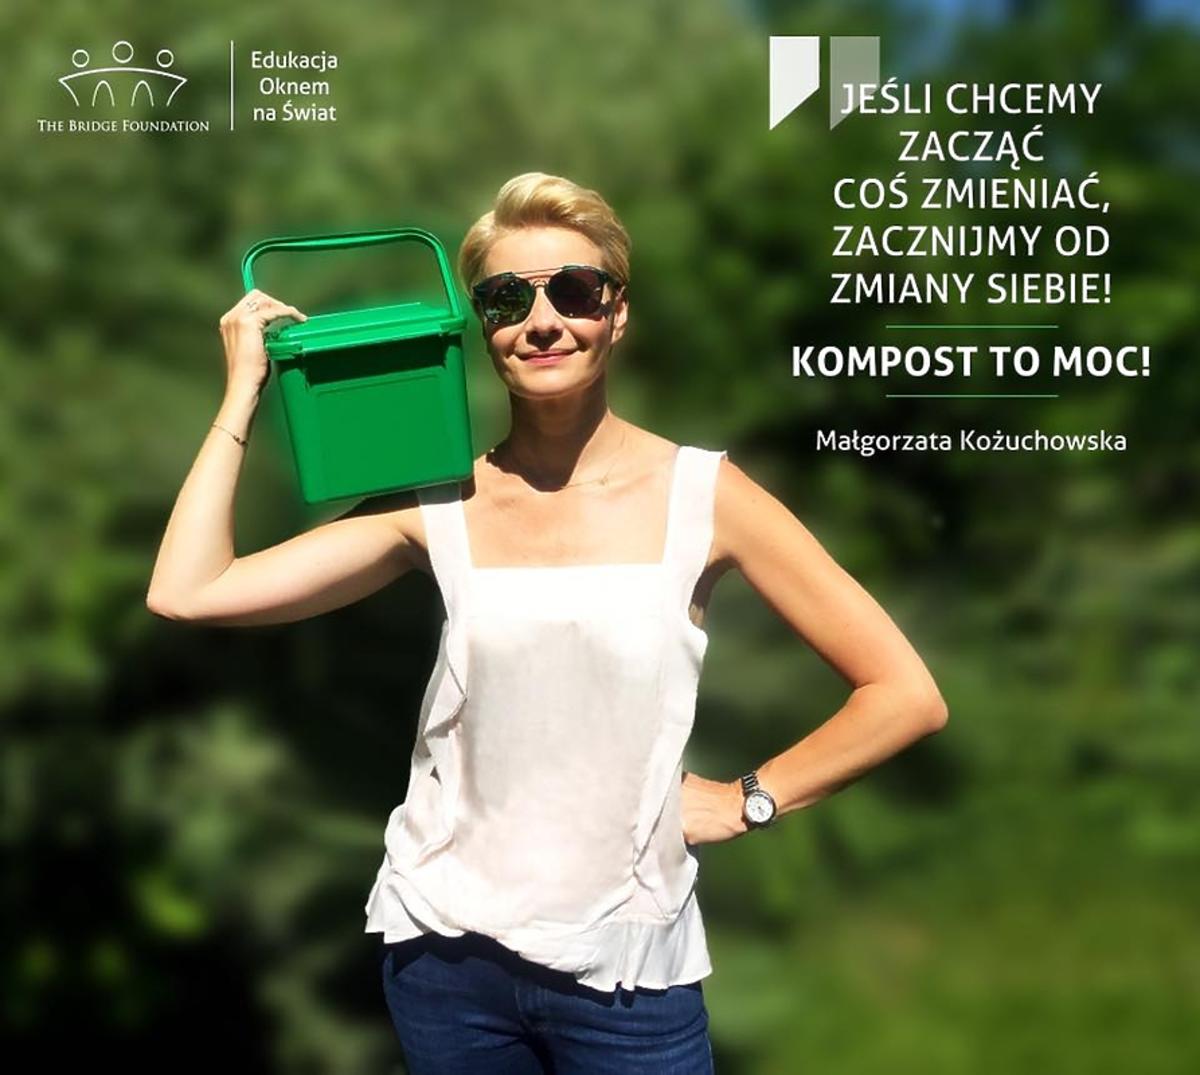 Małgorzata Kożuchowska reklamuje kompost